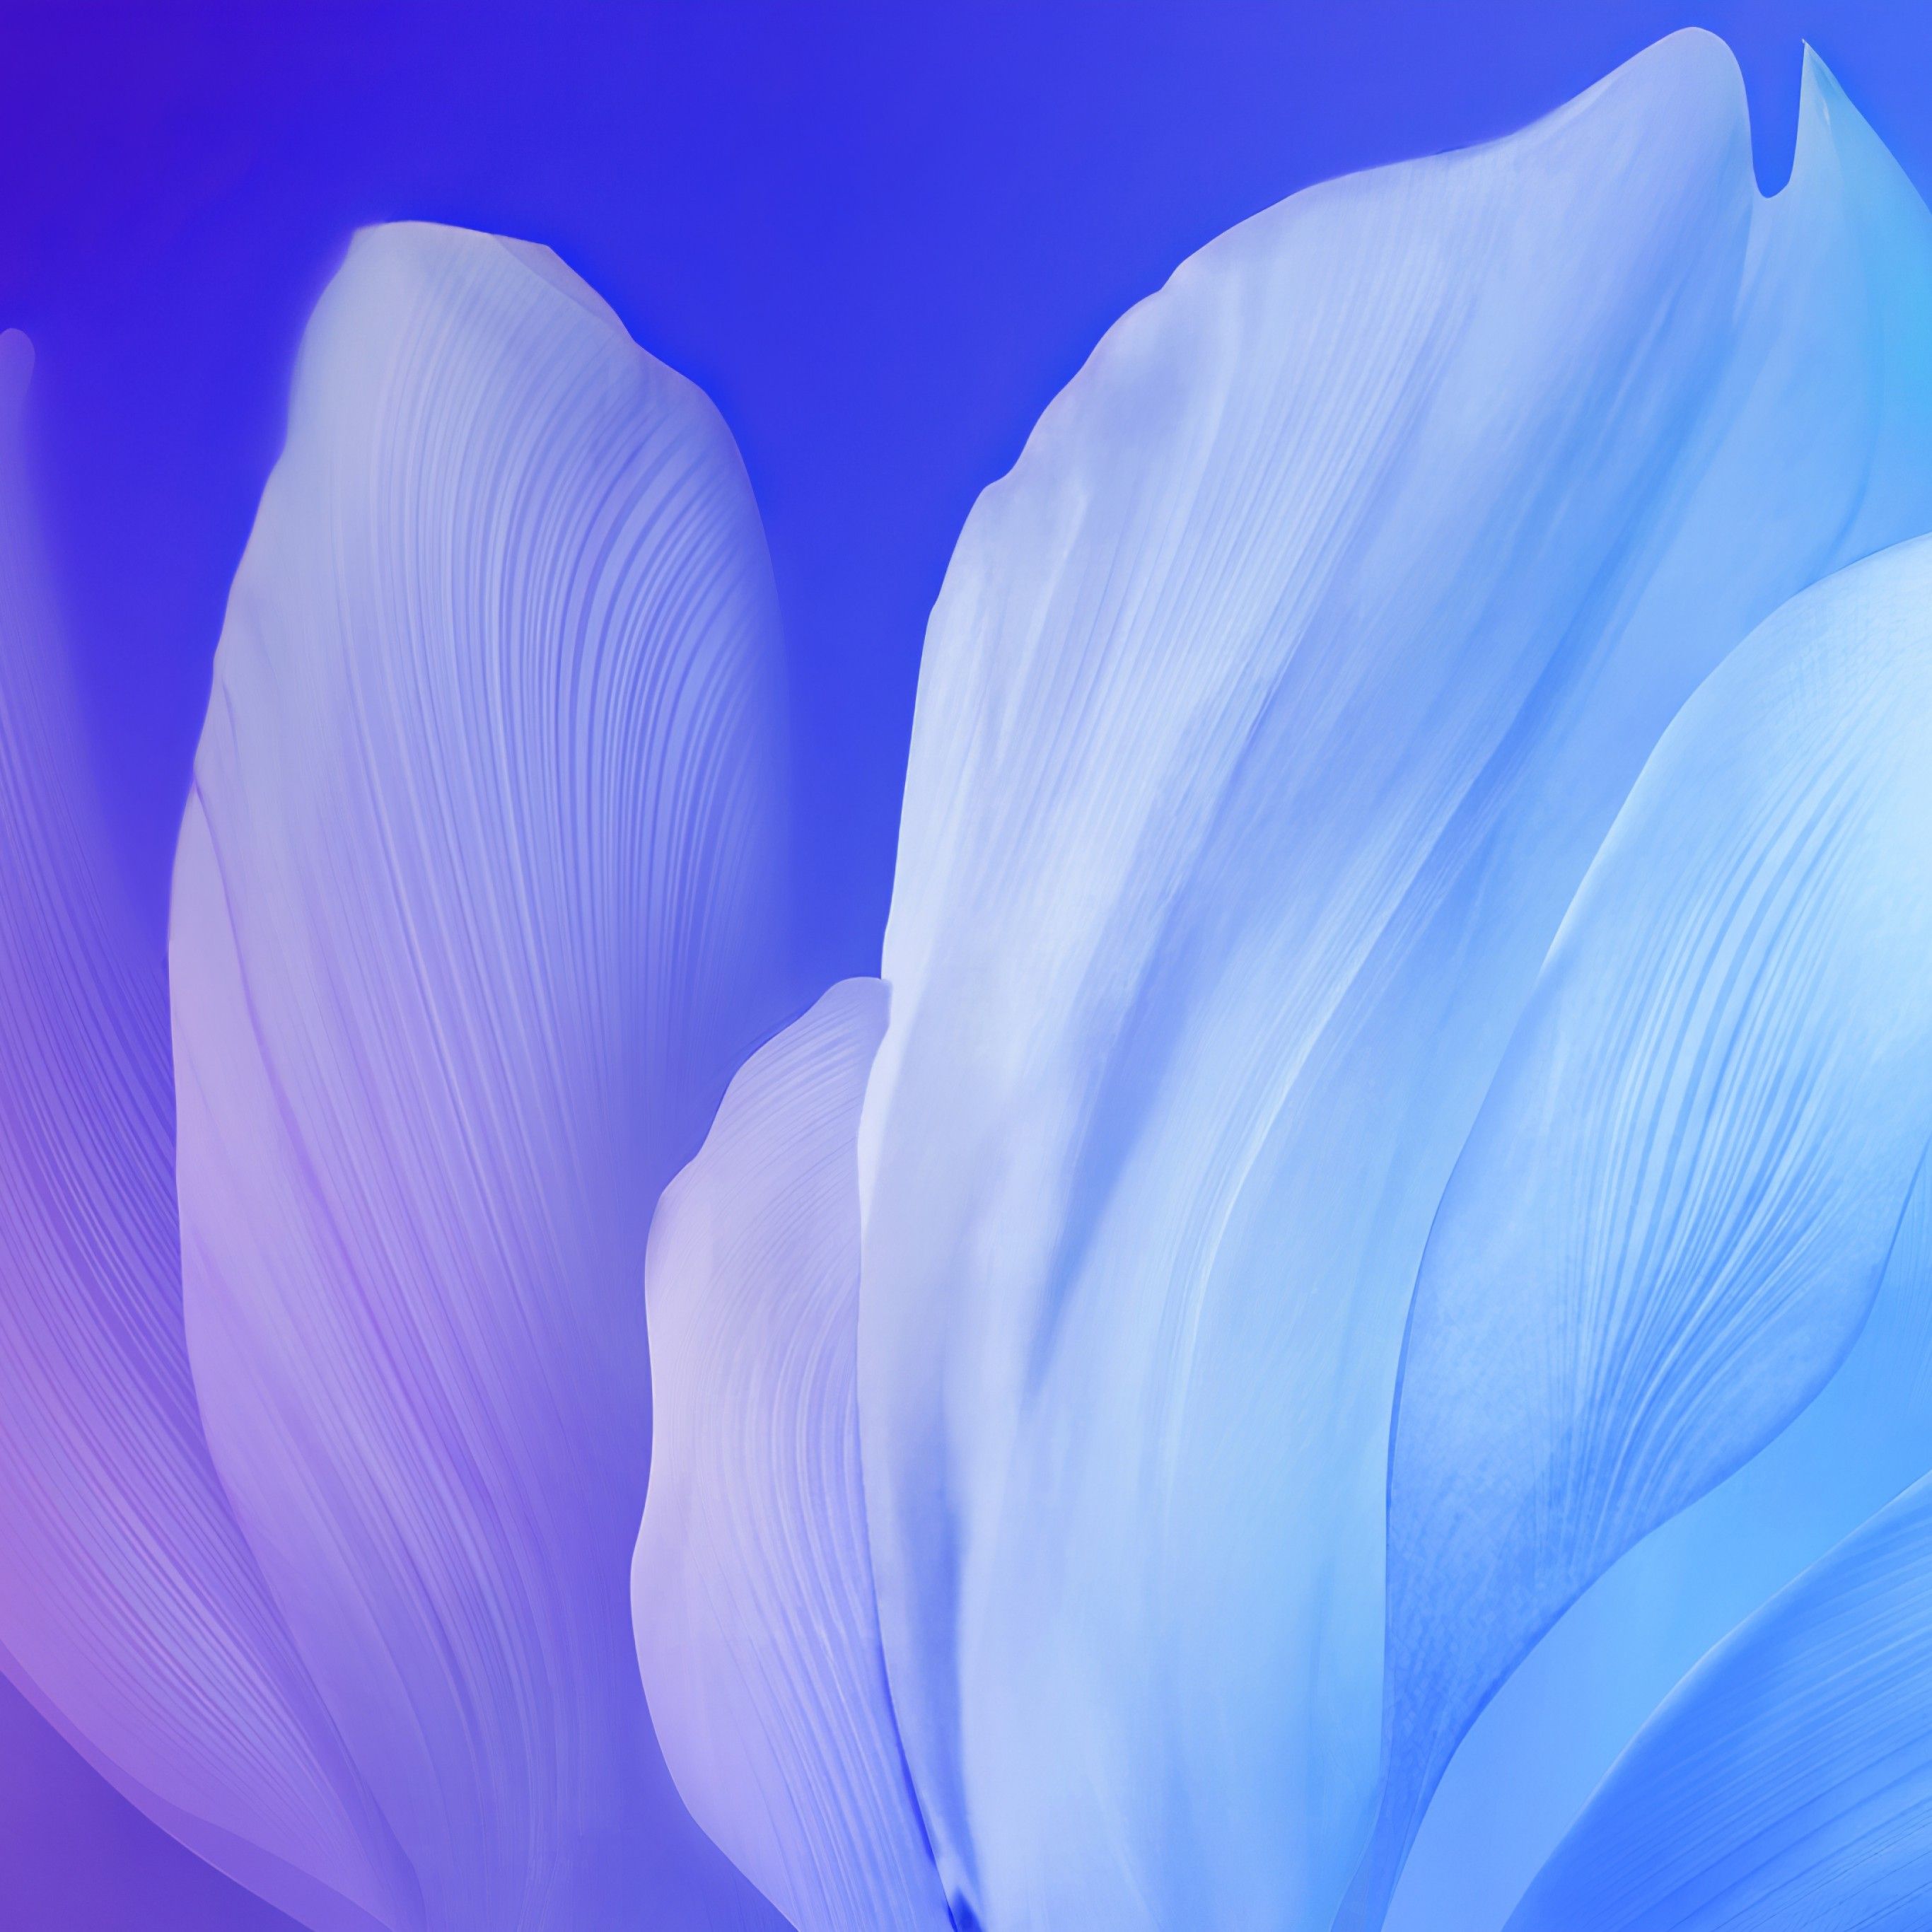 Blue flower 4K Wallpaper, Gradient, Vivo Stock, Android Flowers